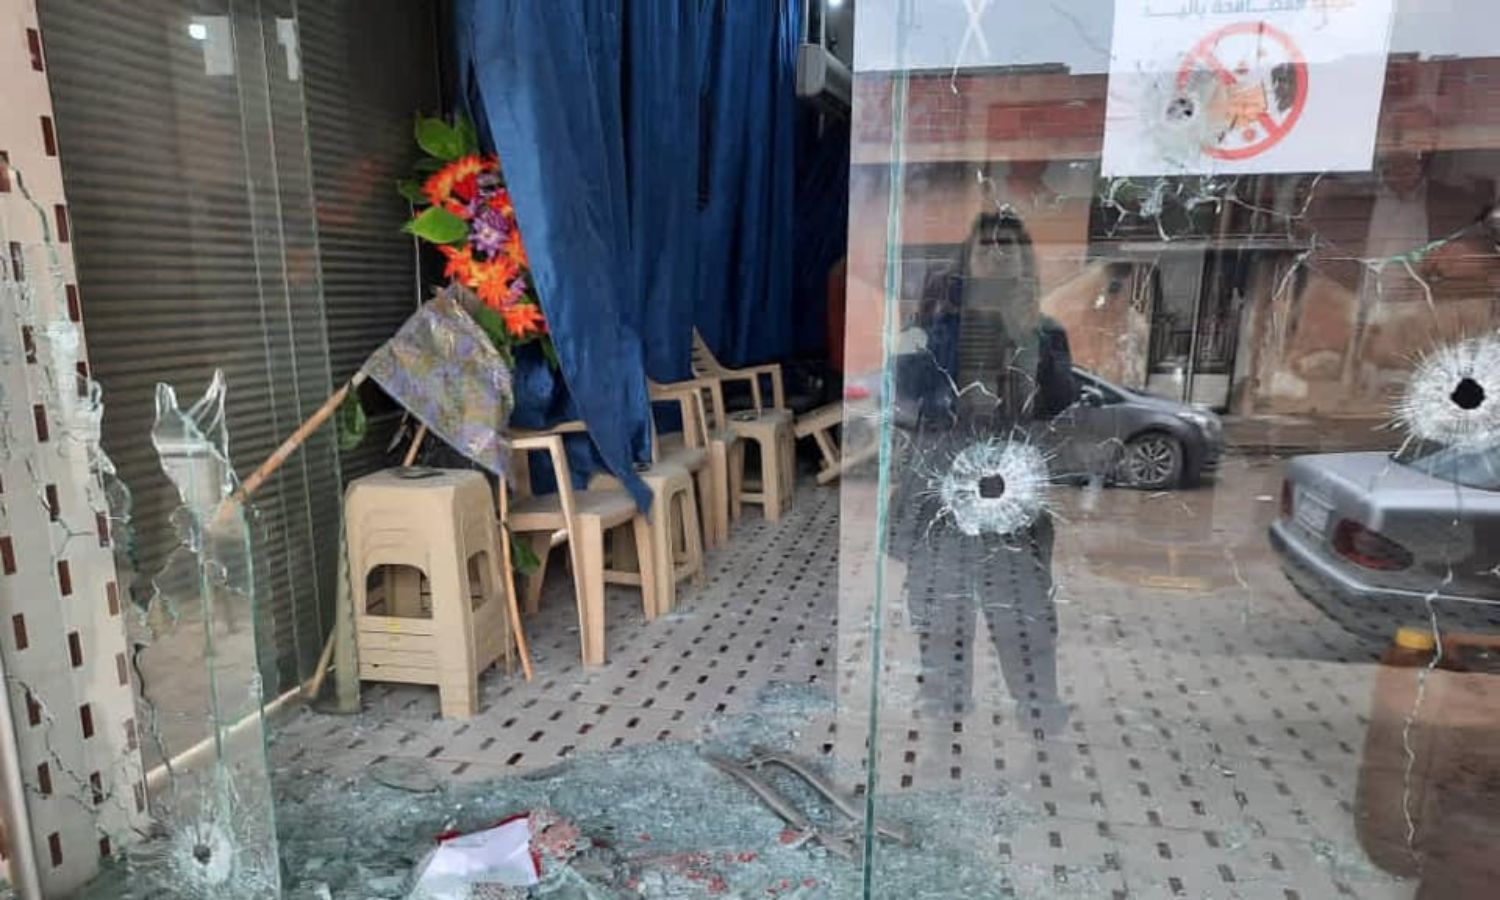 أضرار ناجمة عن اعتداء على مقر للمجلس الوطني الكردي في الدرباسية- 14 من كانون الأول 2020 (حركة الإصلاح الكردي/ فيس بوك)